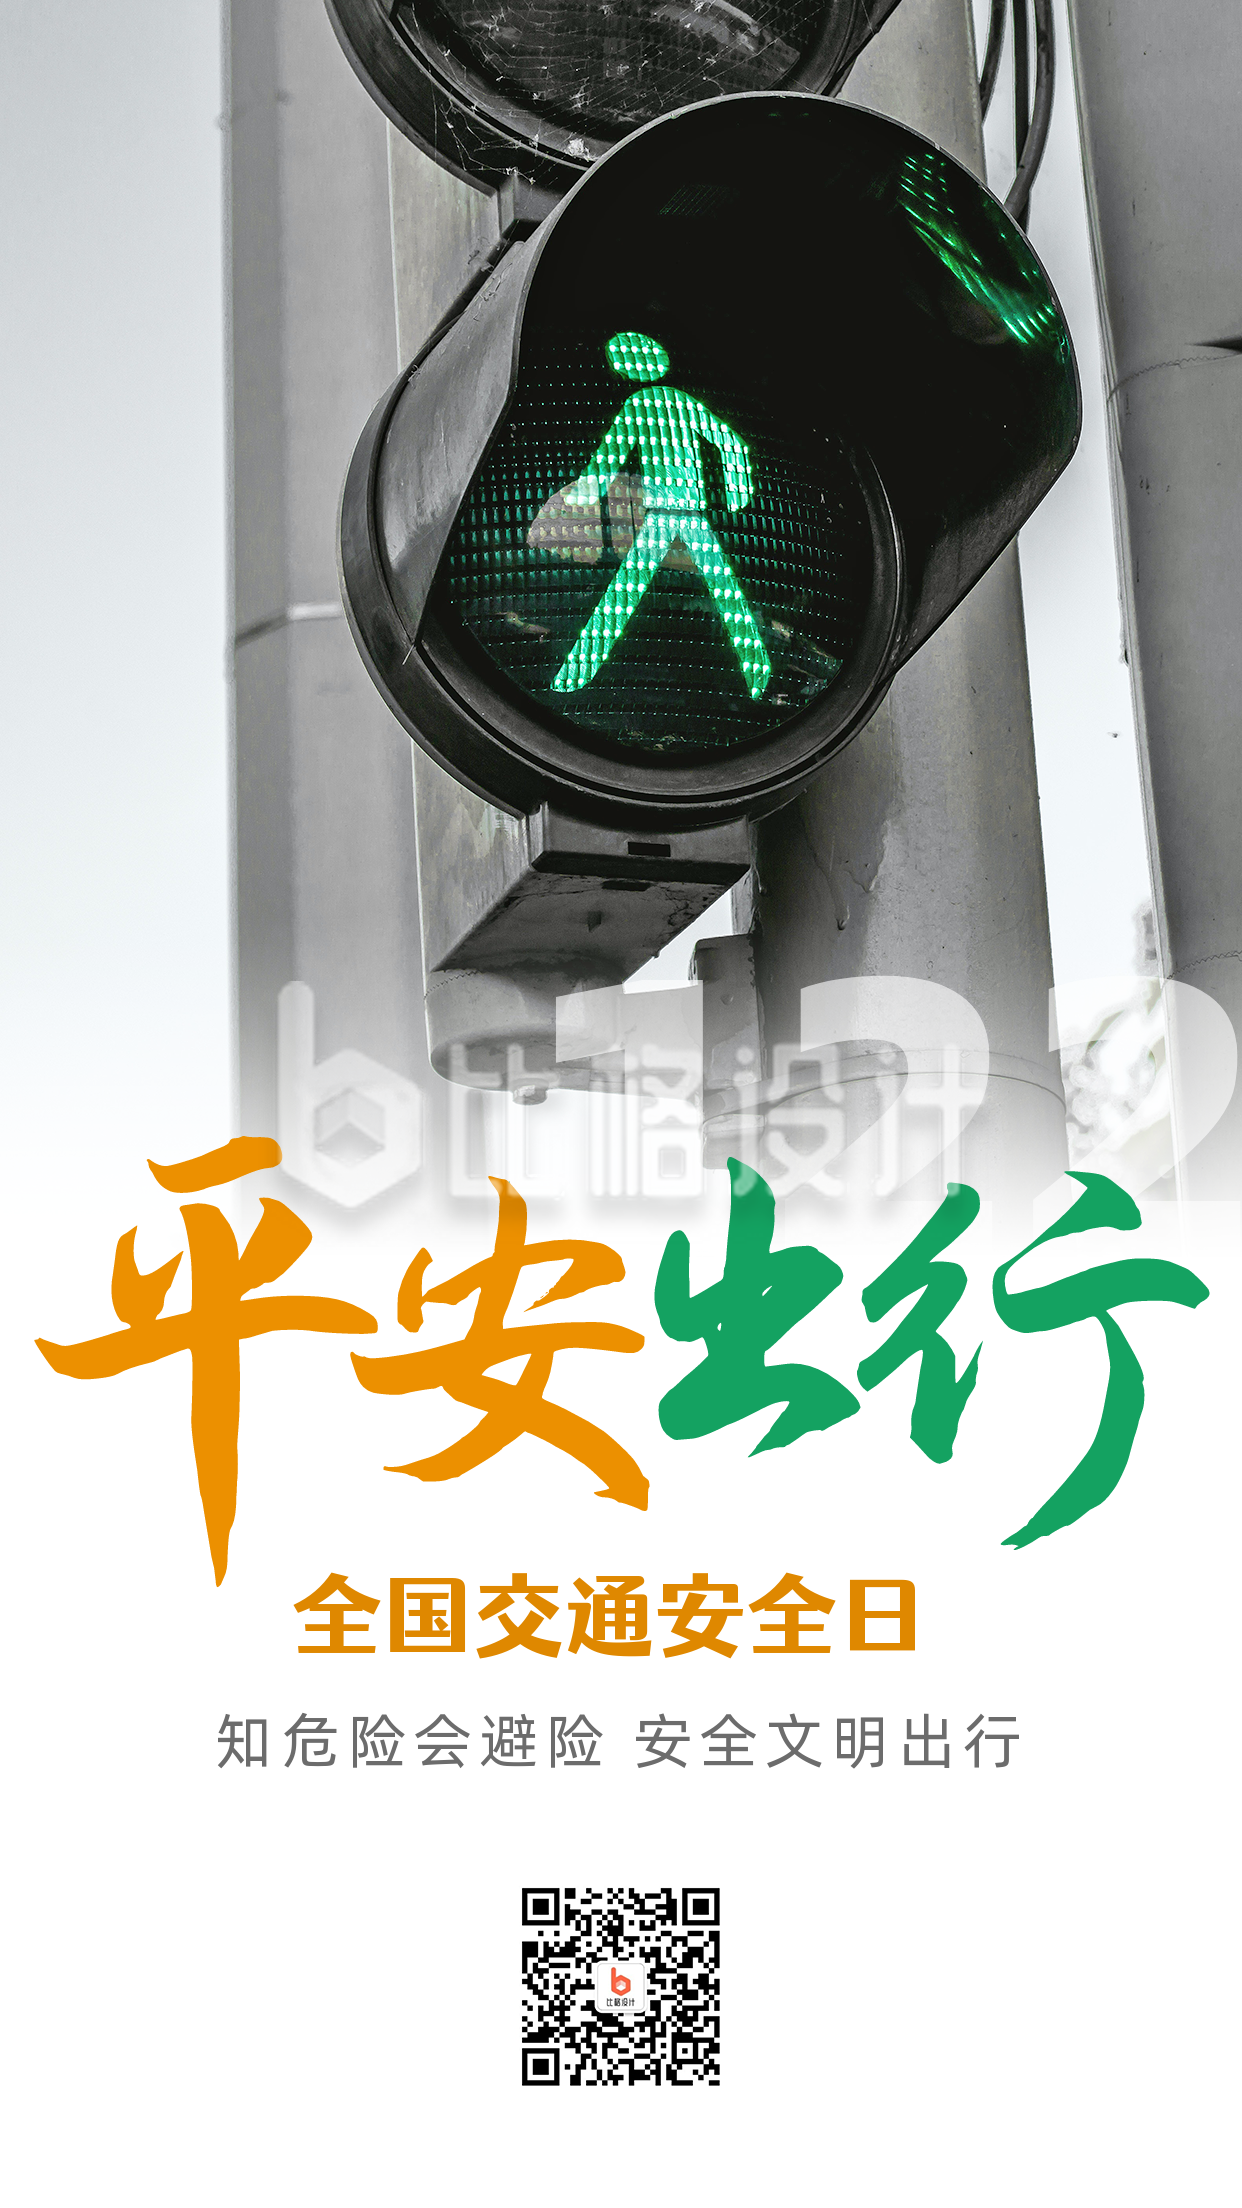 交通安全日红绿灯实景配图手机海报